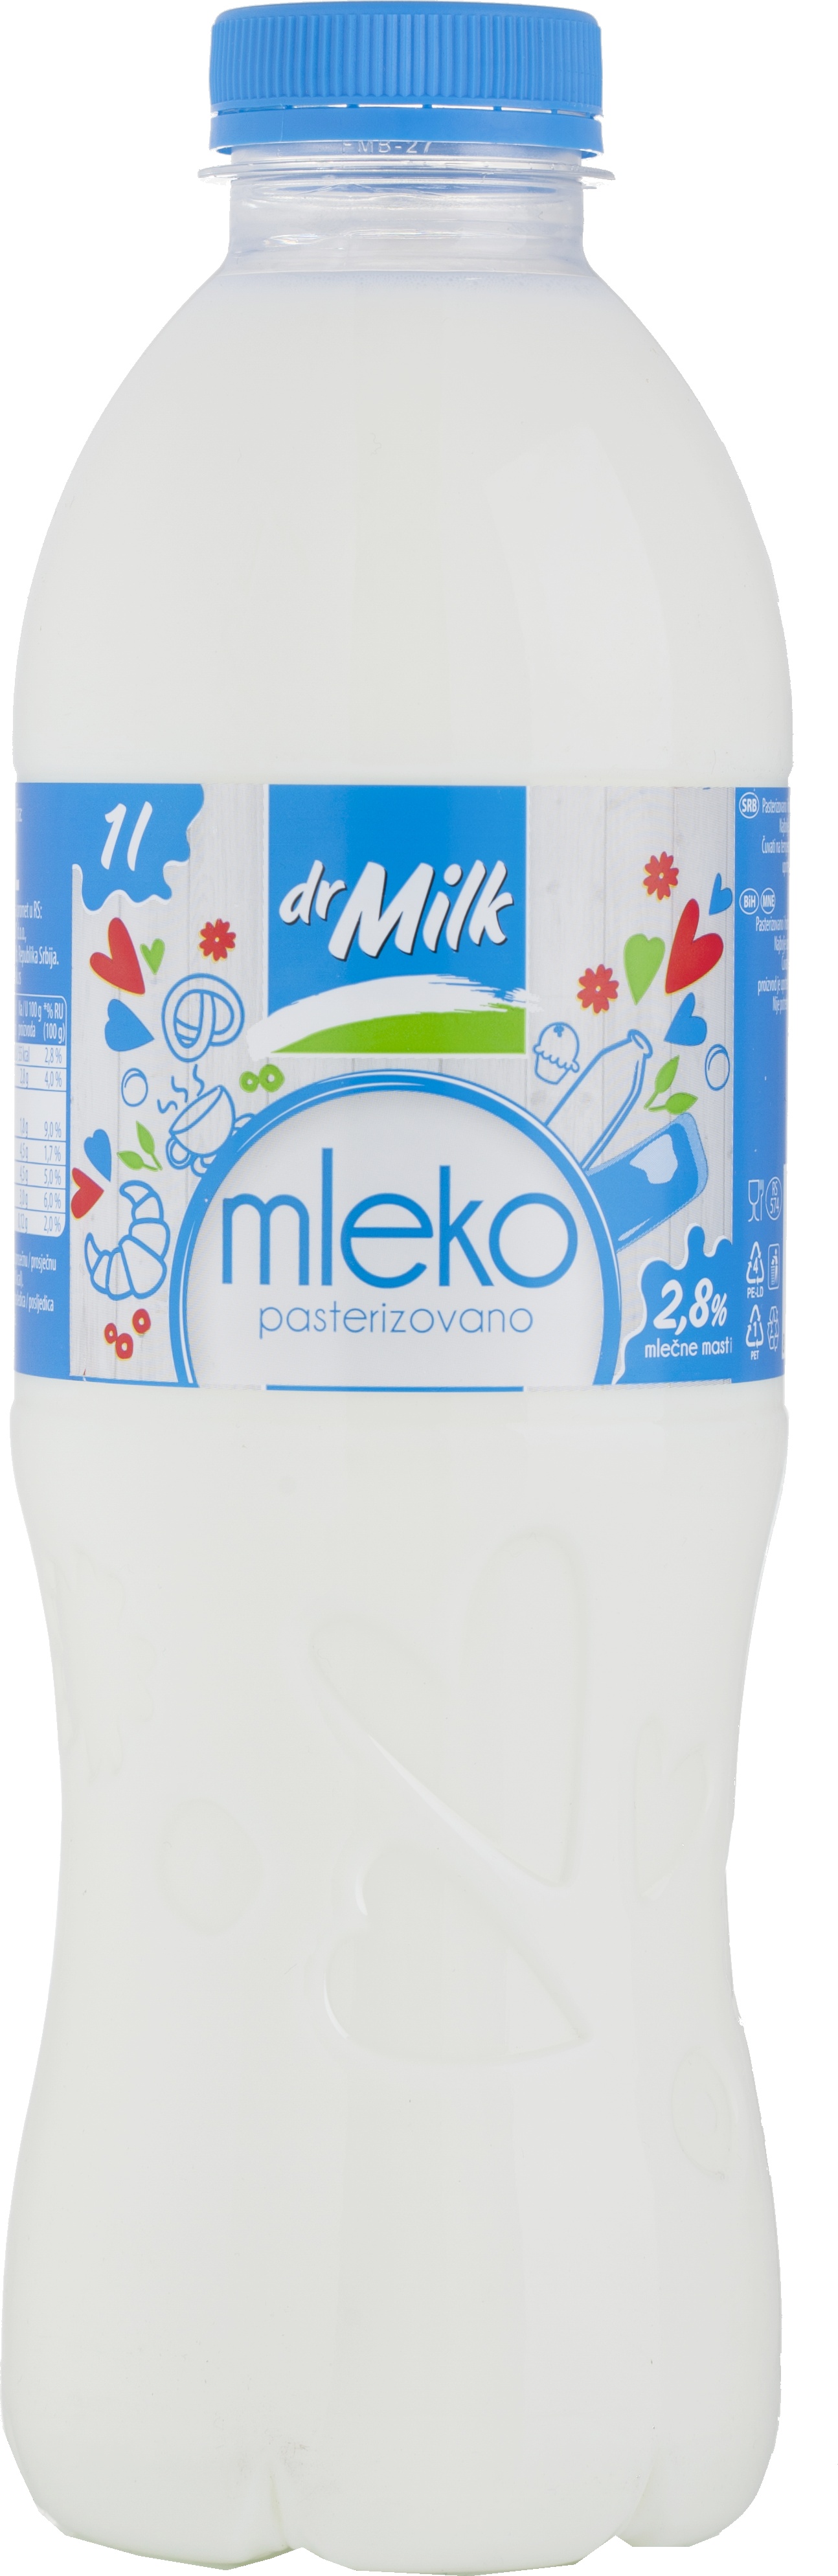 Slika za Sveže mleko 2.8%mm Dr. Milk 1l